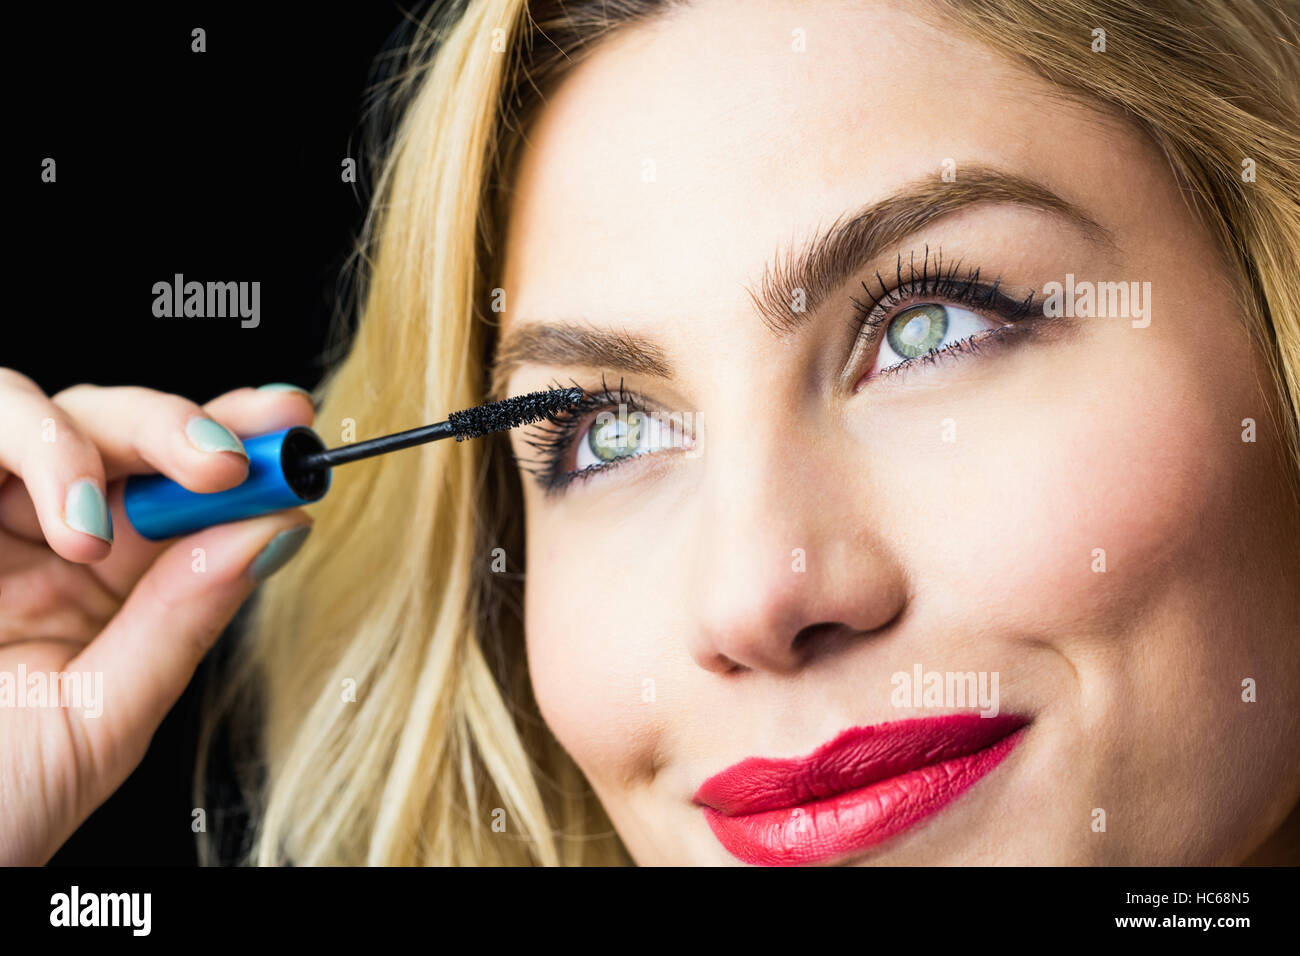 Beautiful woman applying mascara on eyelashes against black background Stock Photo